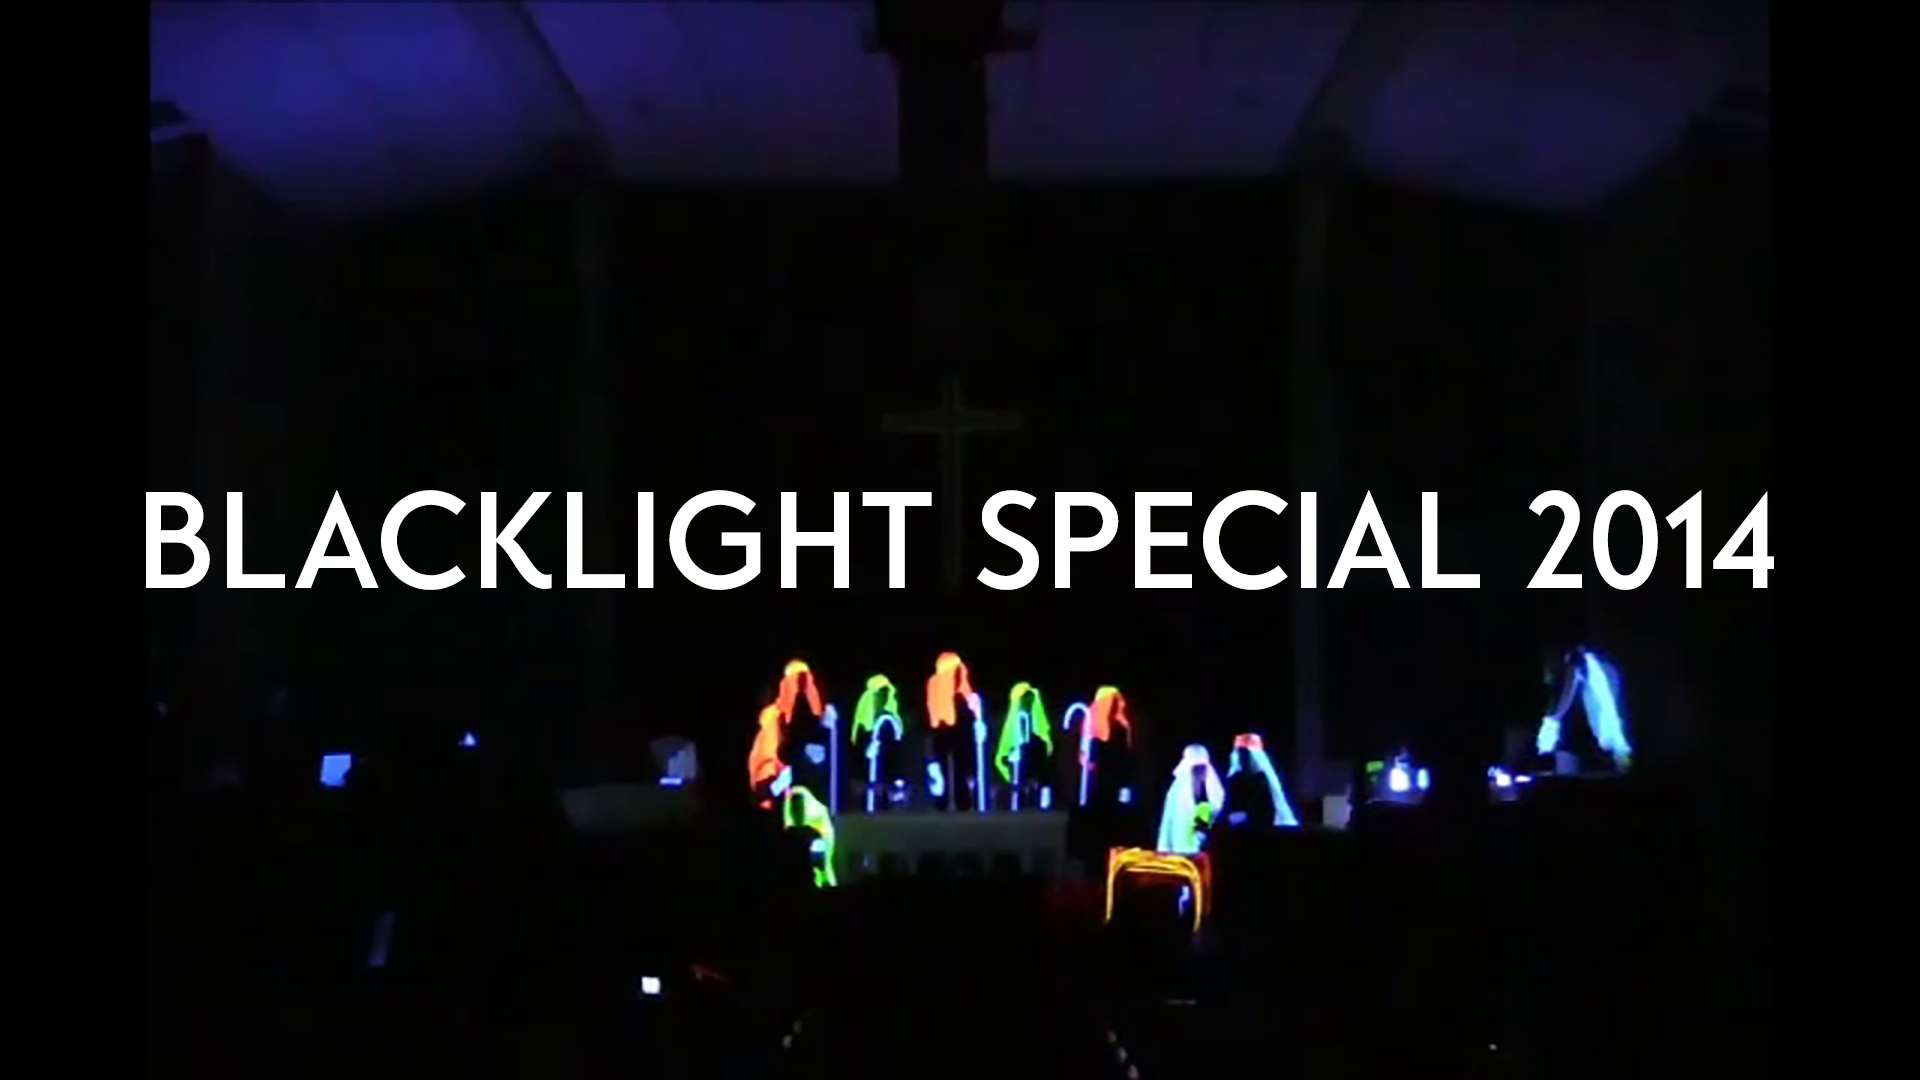 Blacklight Special 2014 Image